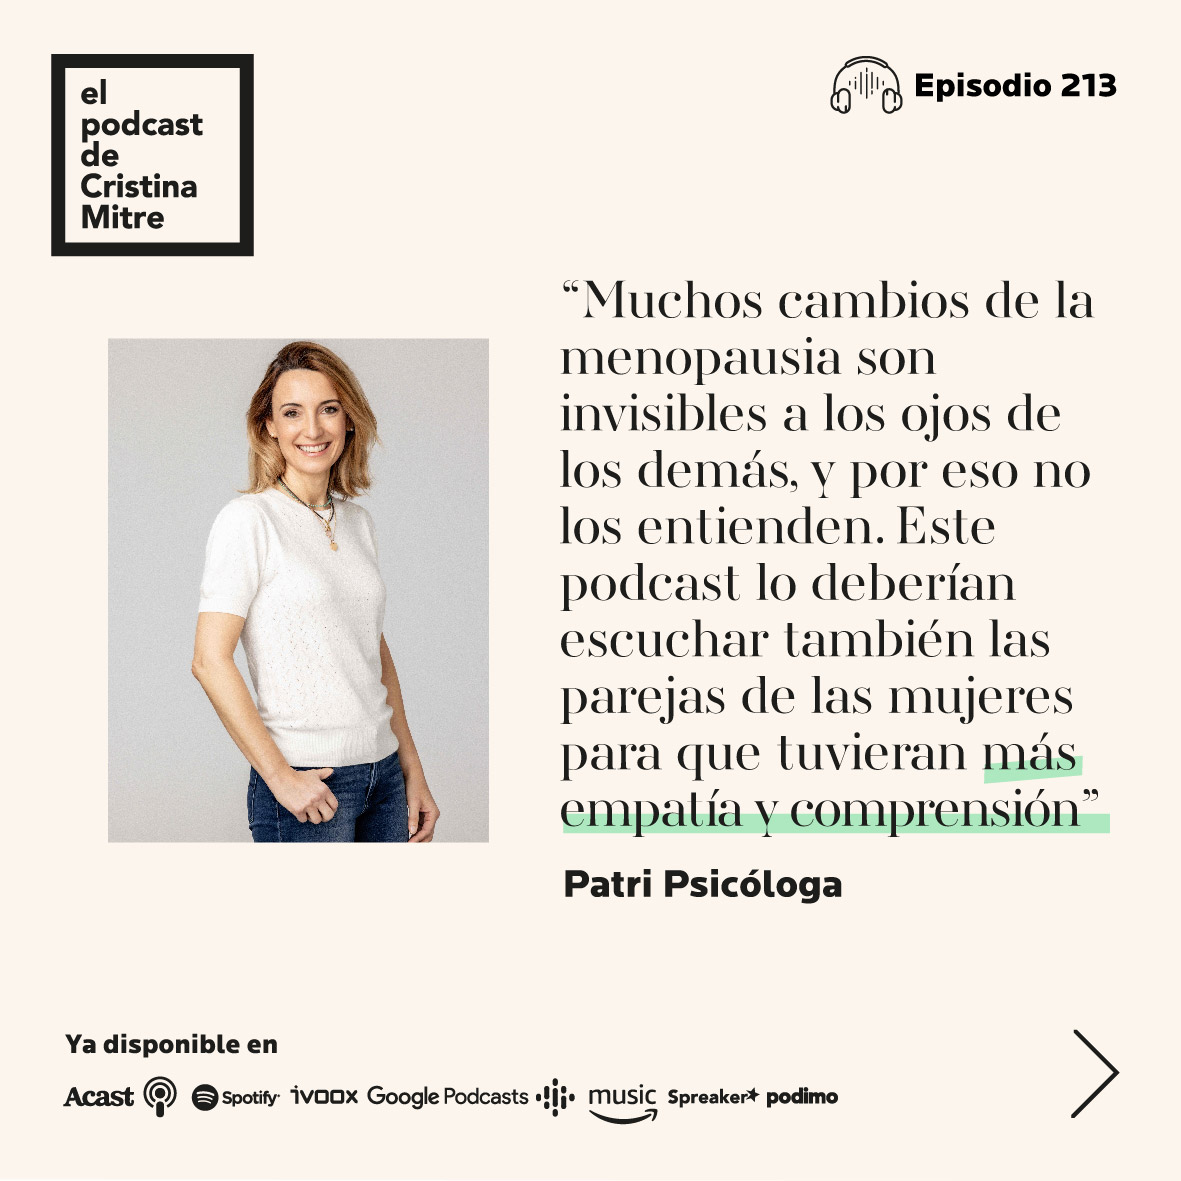 El podcast de Cristina Mitre Menopausia Clotilde Vazquez Gema Herrerias Patri Psicologa